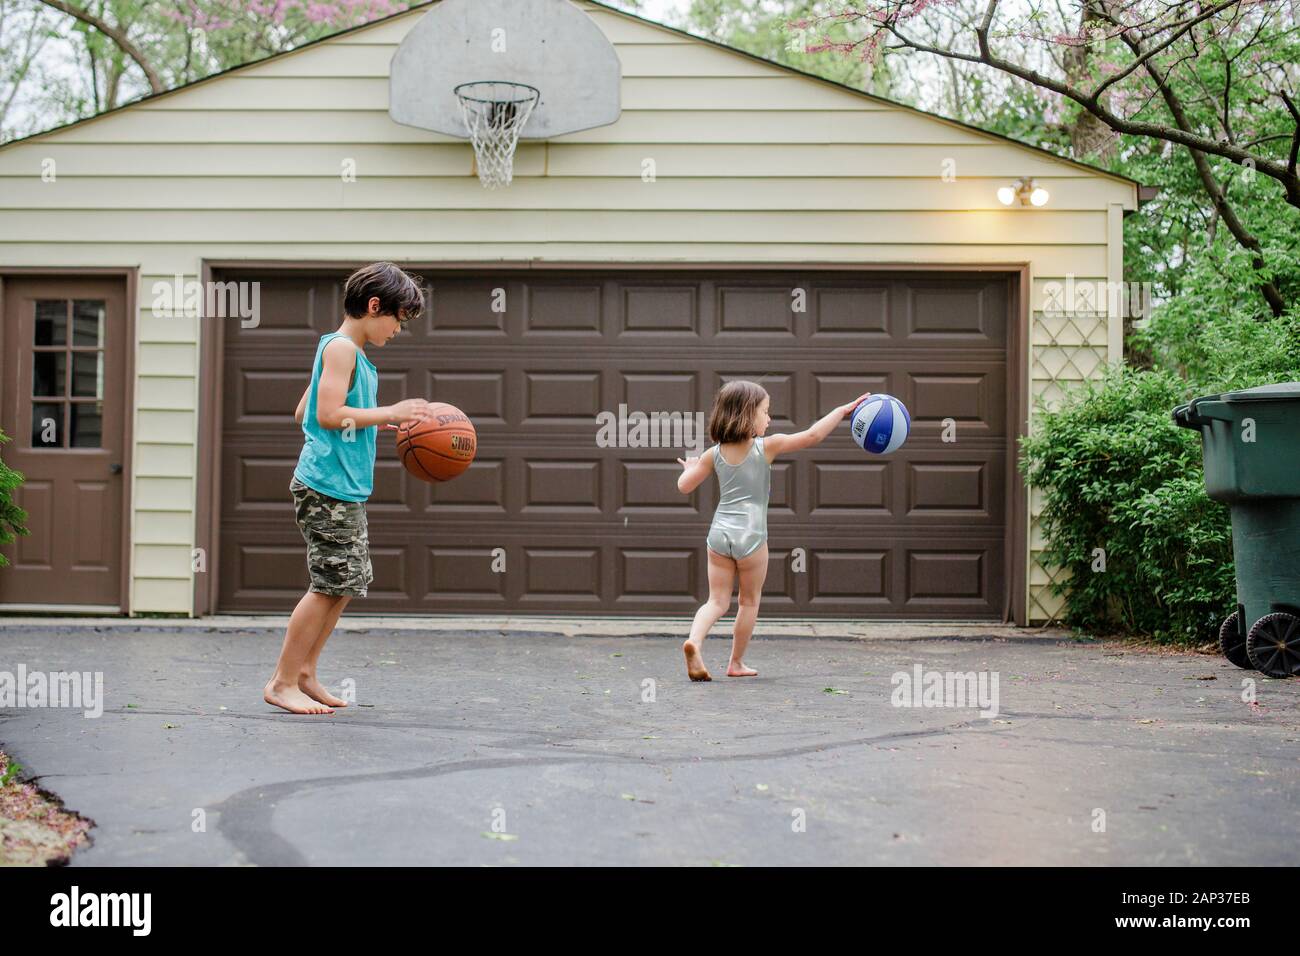 due bambini a piedi nudi dribbling basketball in un vialetto Foto Stock